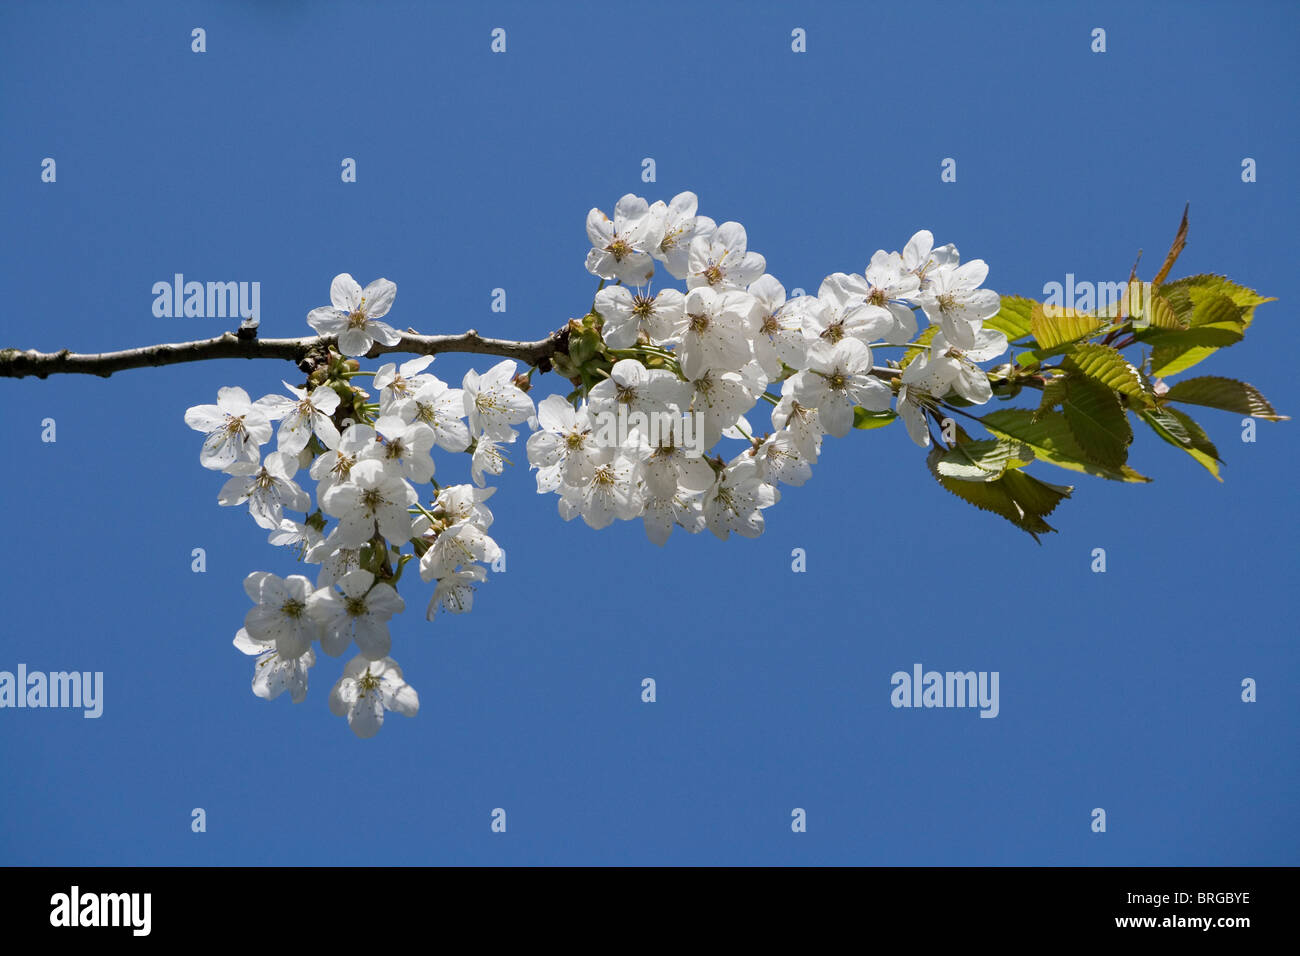 White ornamental cherry blossom against a blue sky. Stock Photo